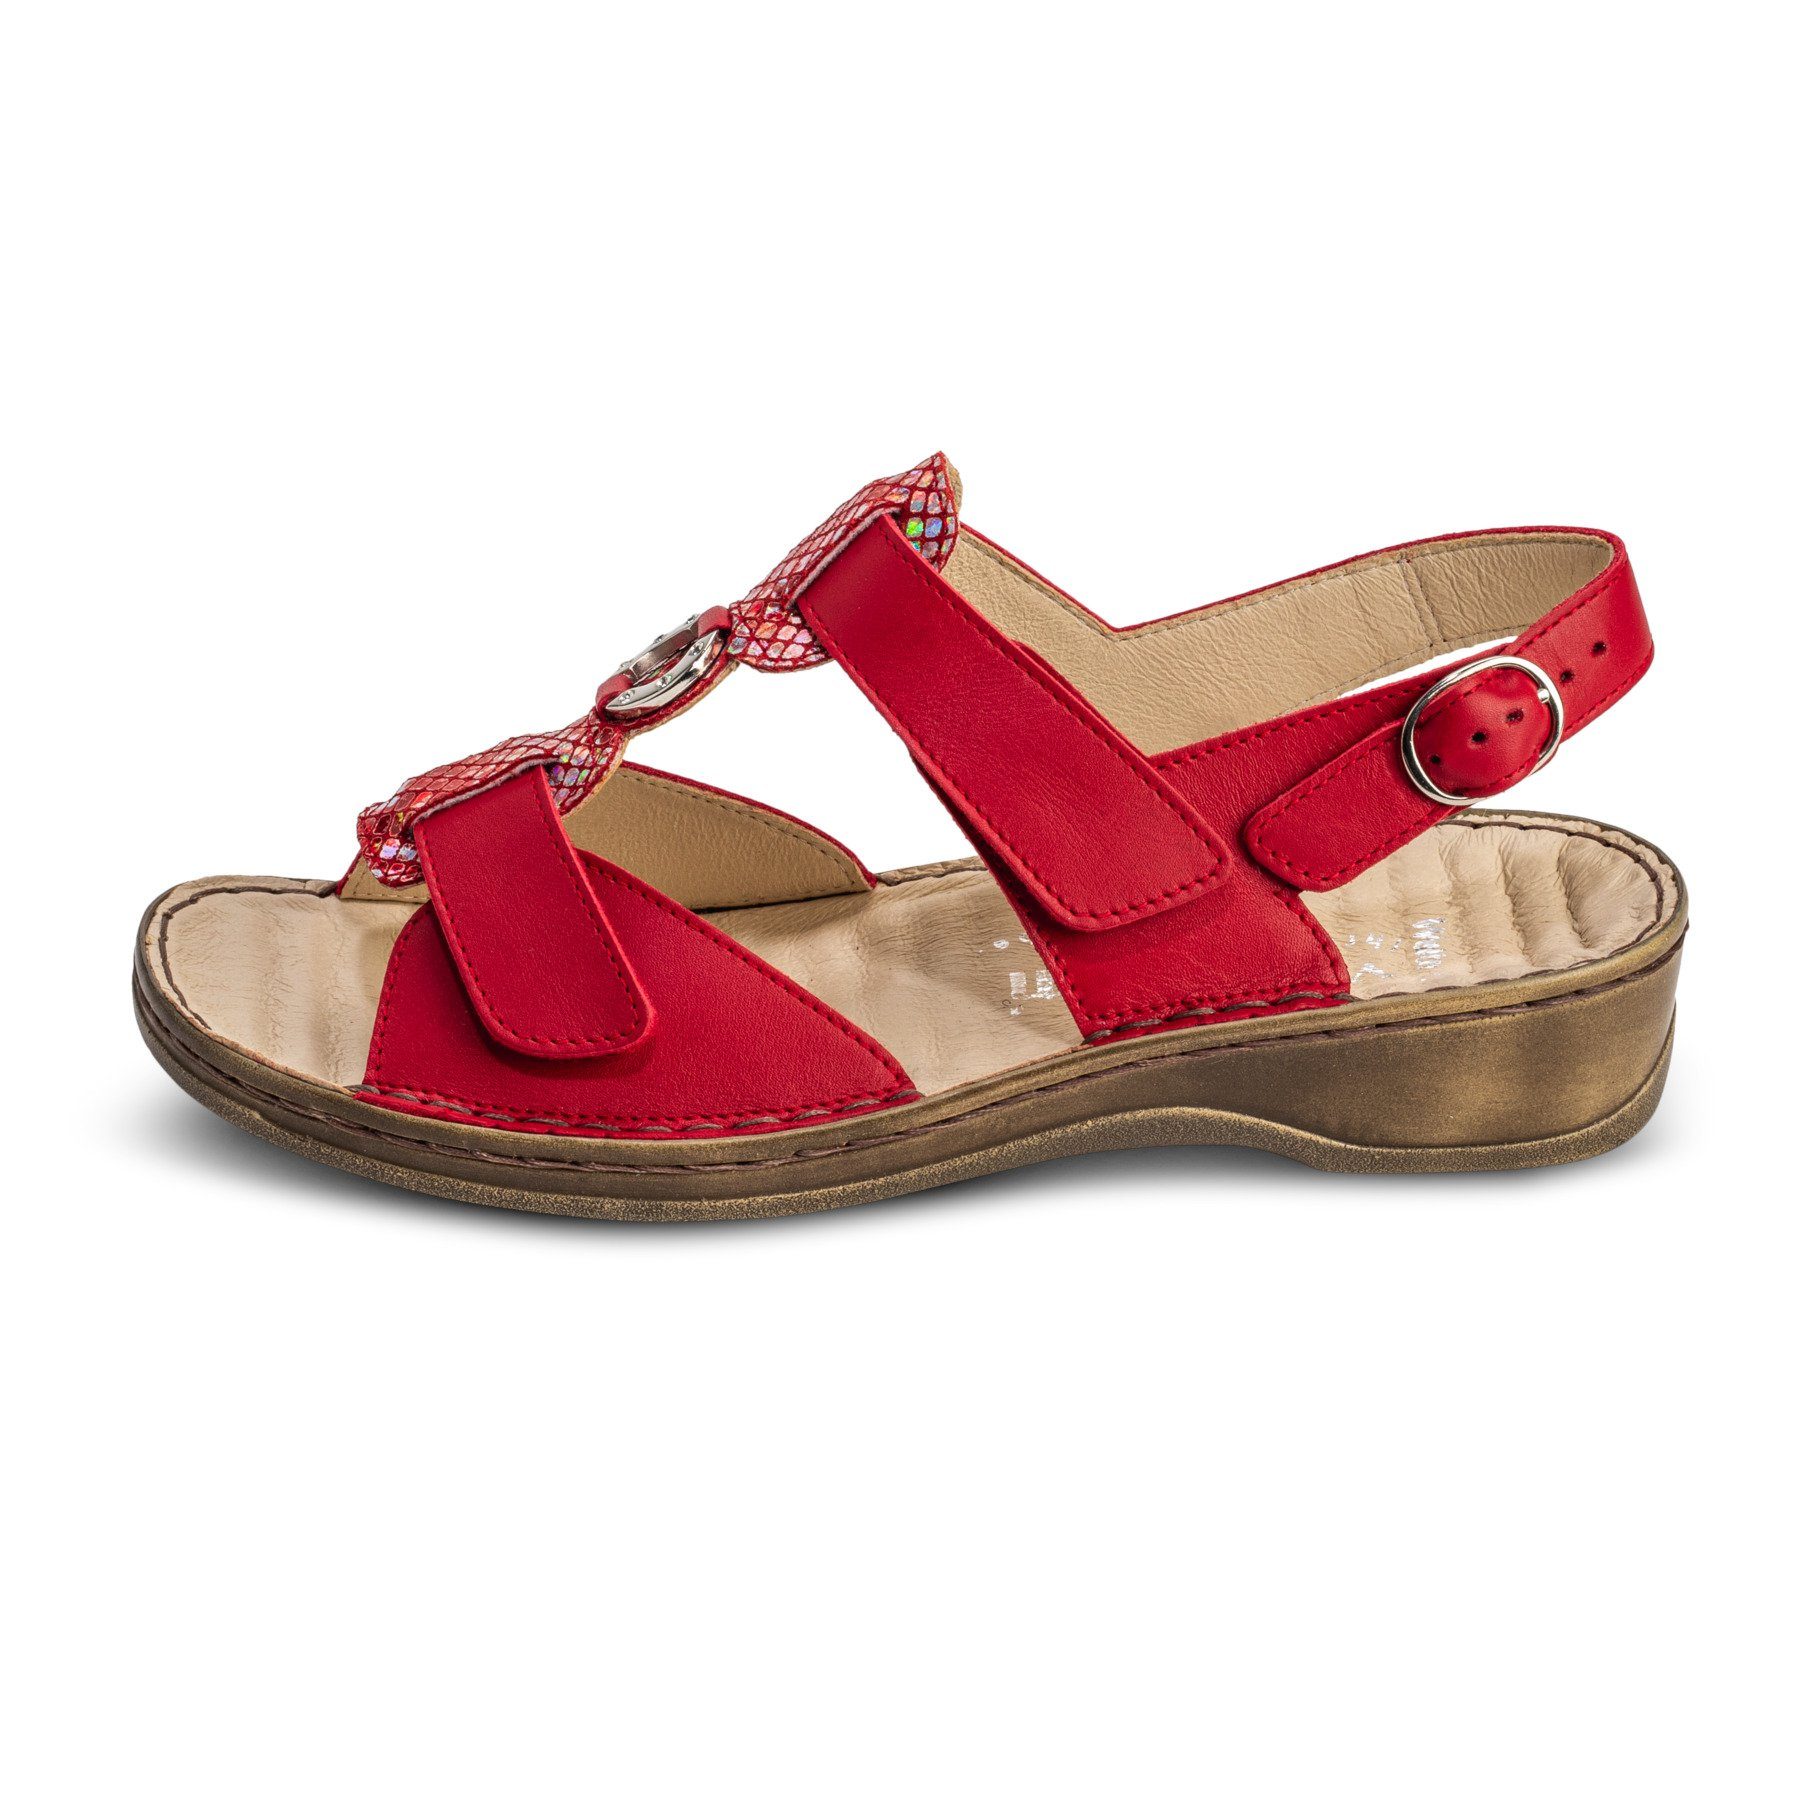 Sandale Damenschuhe rot Leder Sandalette echt vitaform